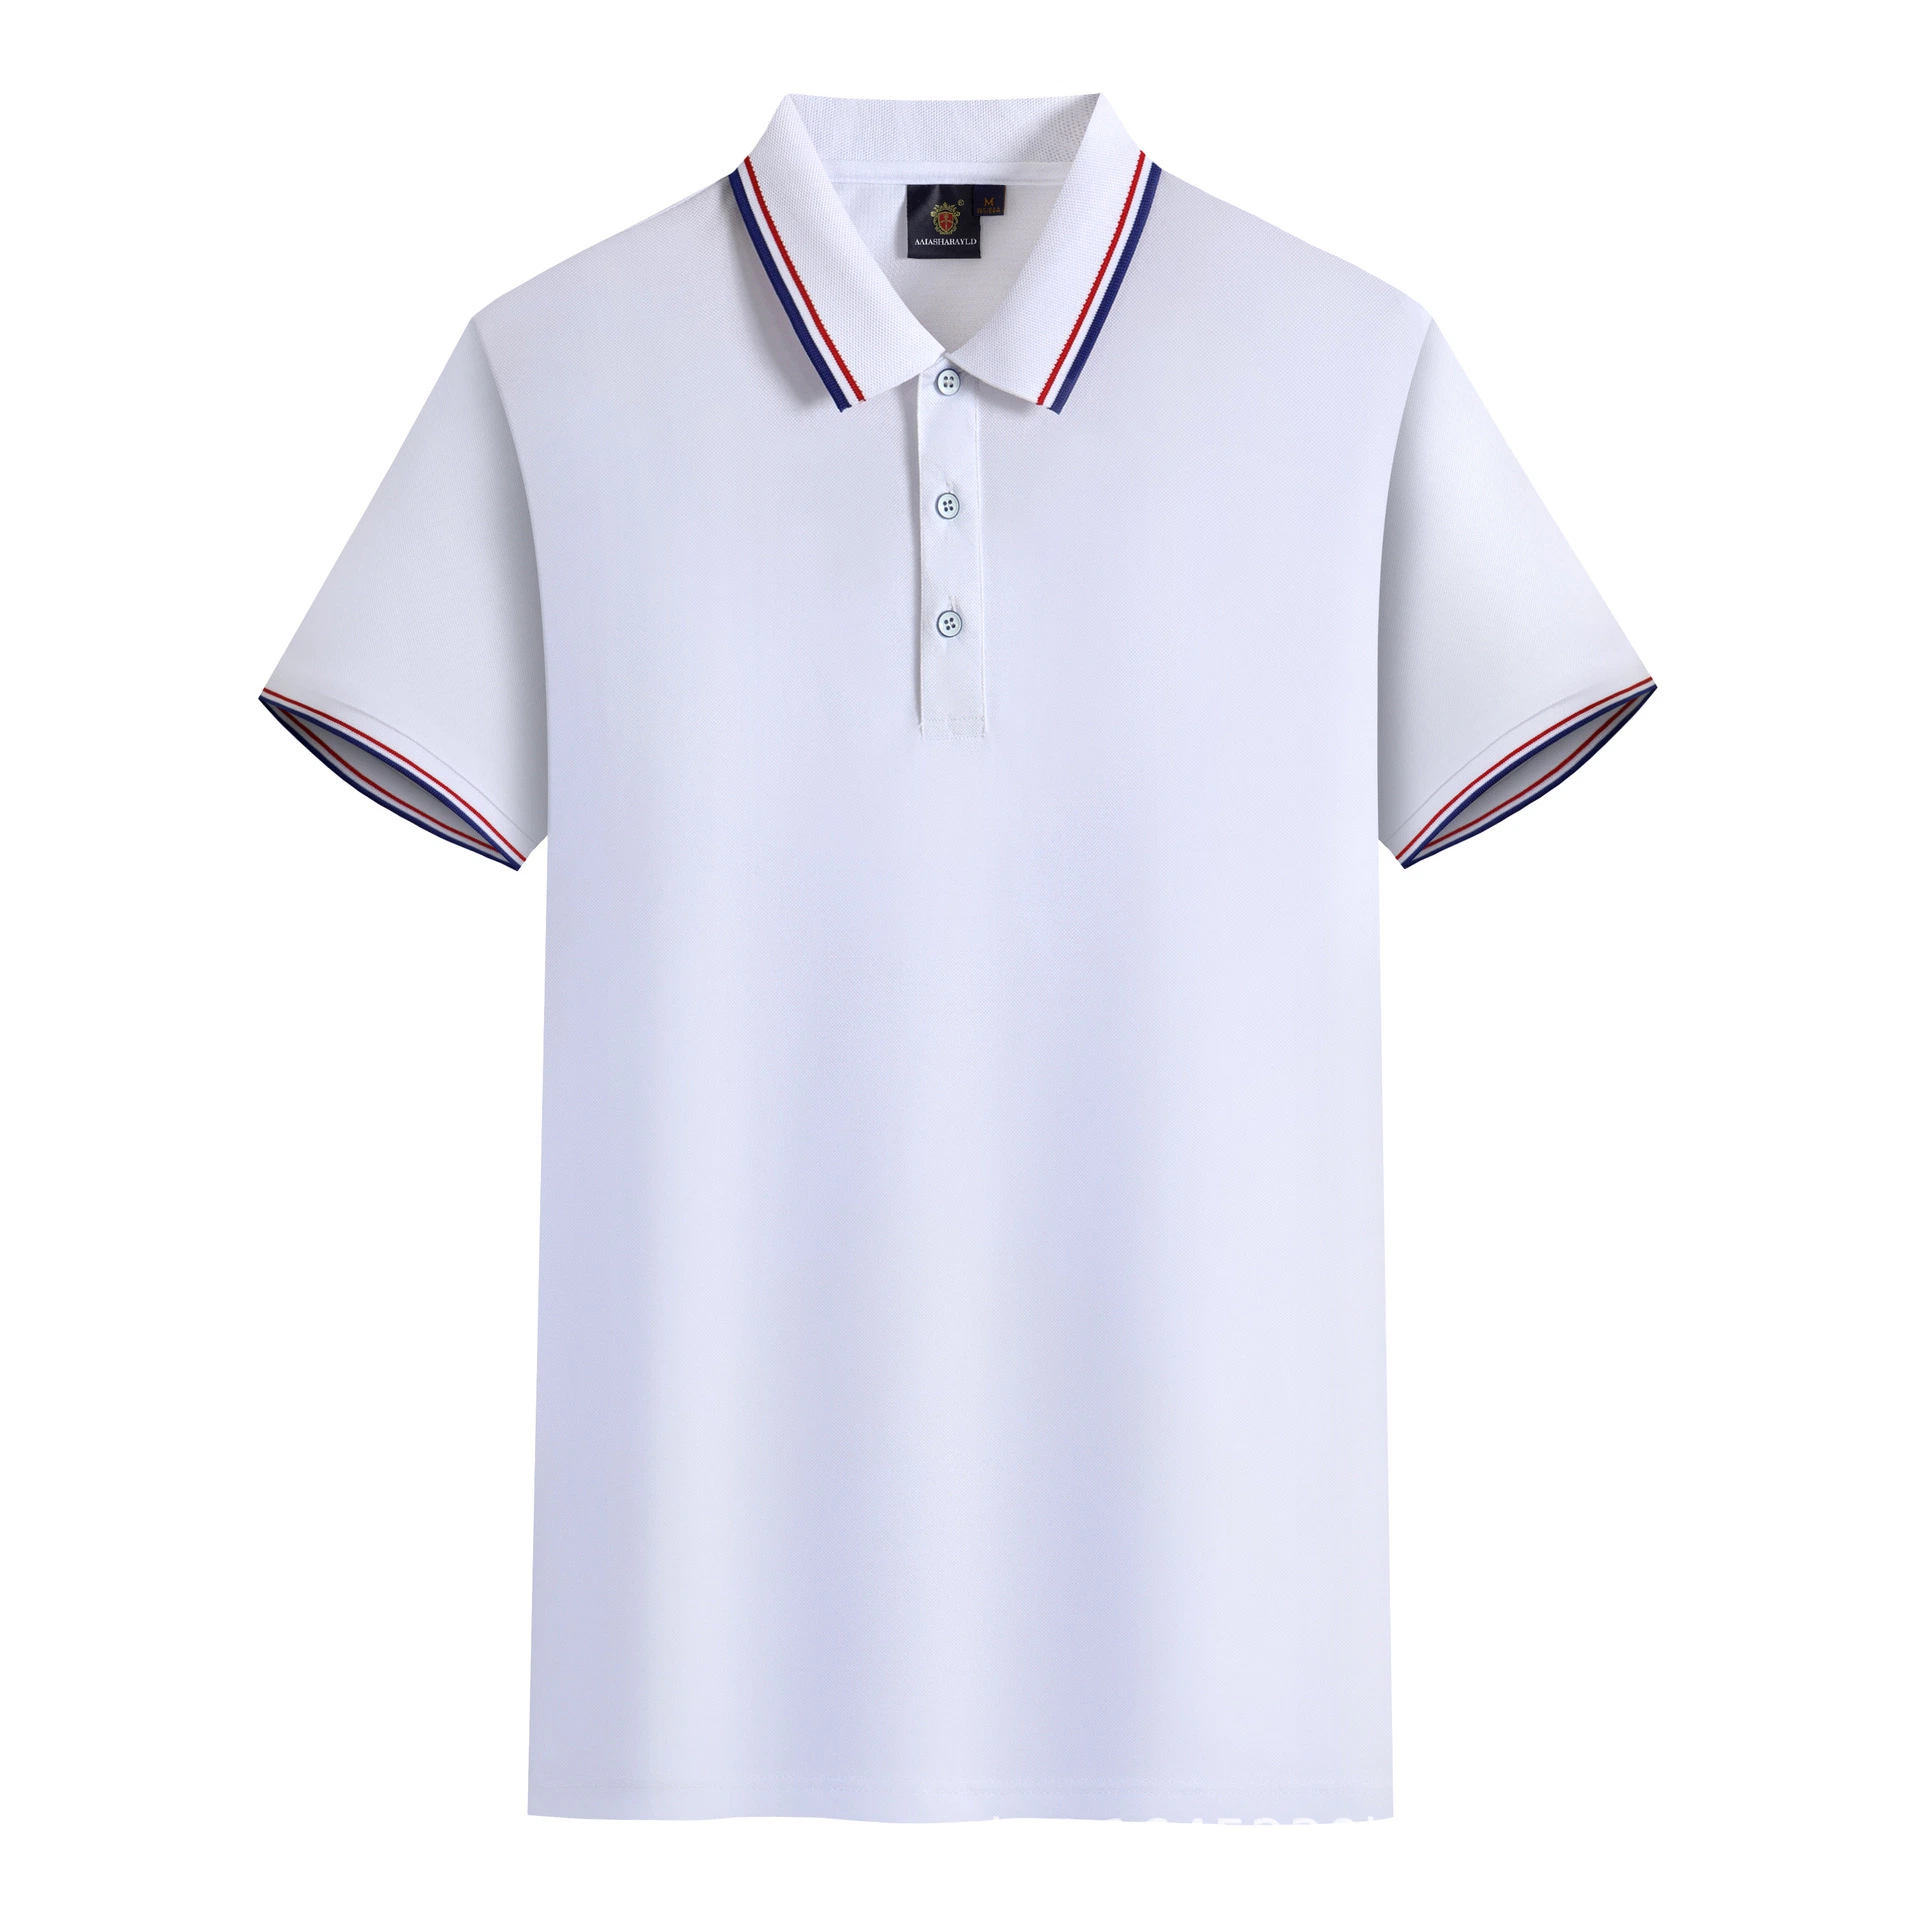 Impresión personalizada al por mayor bordado Logo ropa ropa de trabajo Deporte uniforme Polo de golf para hombre